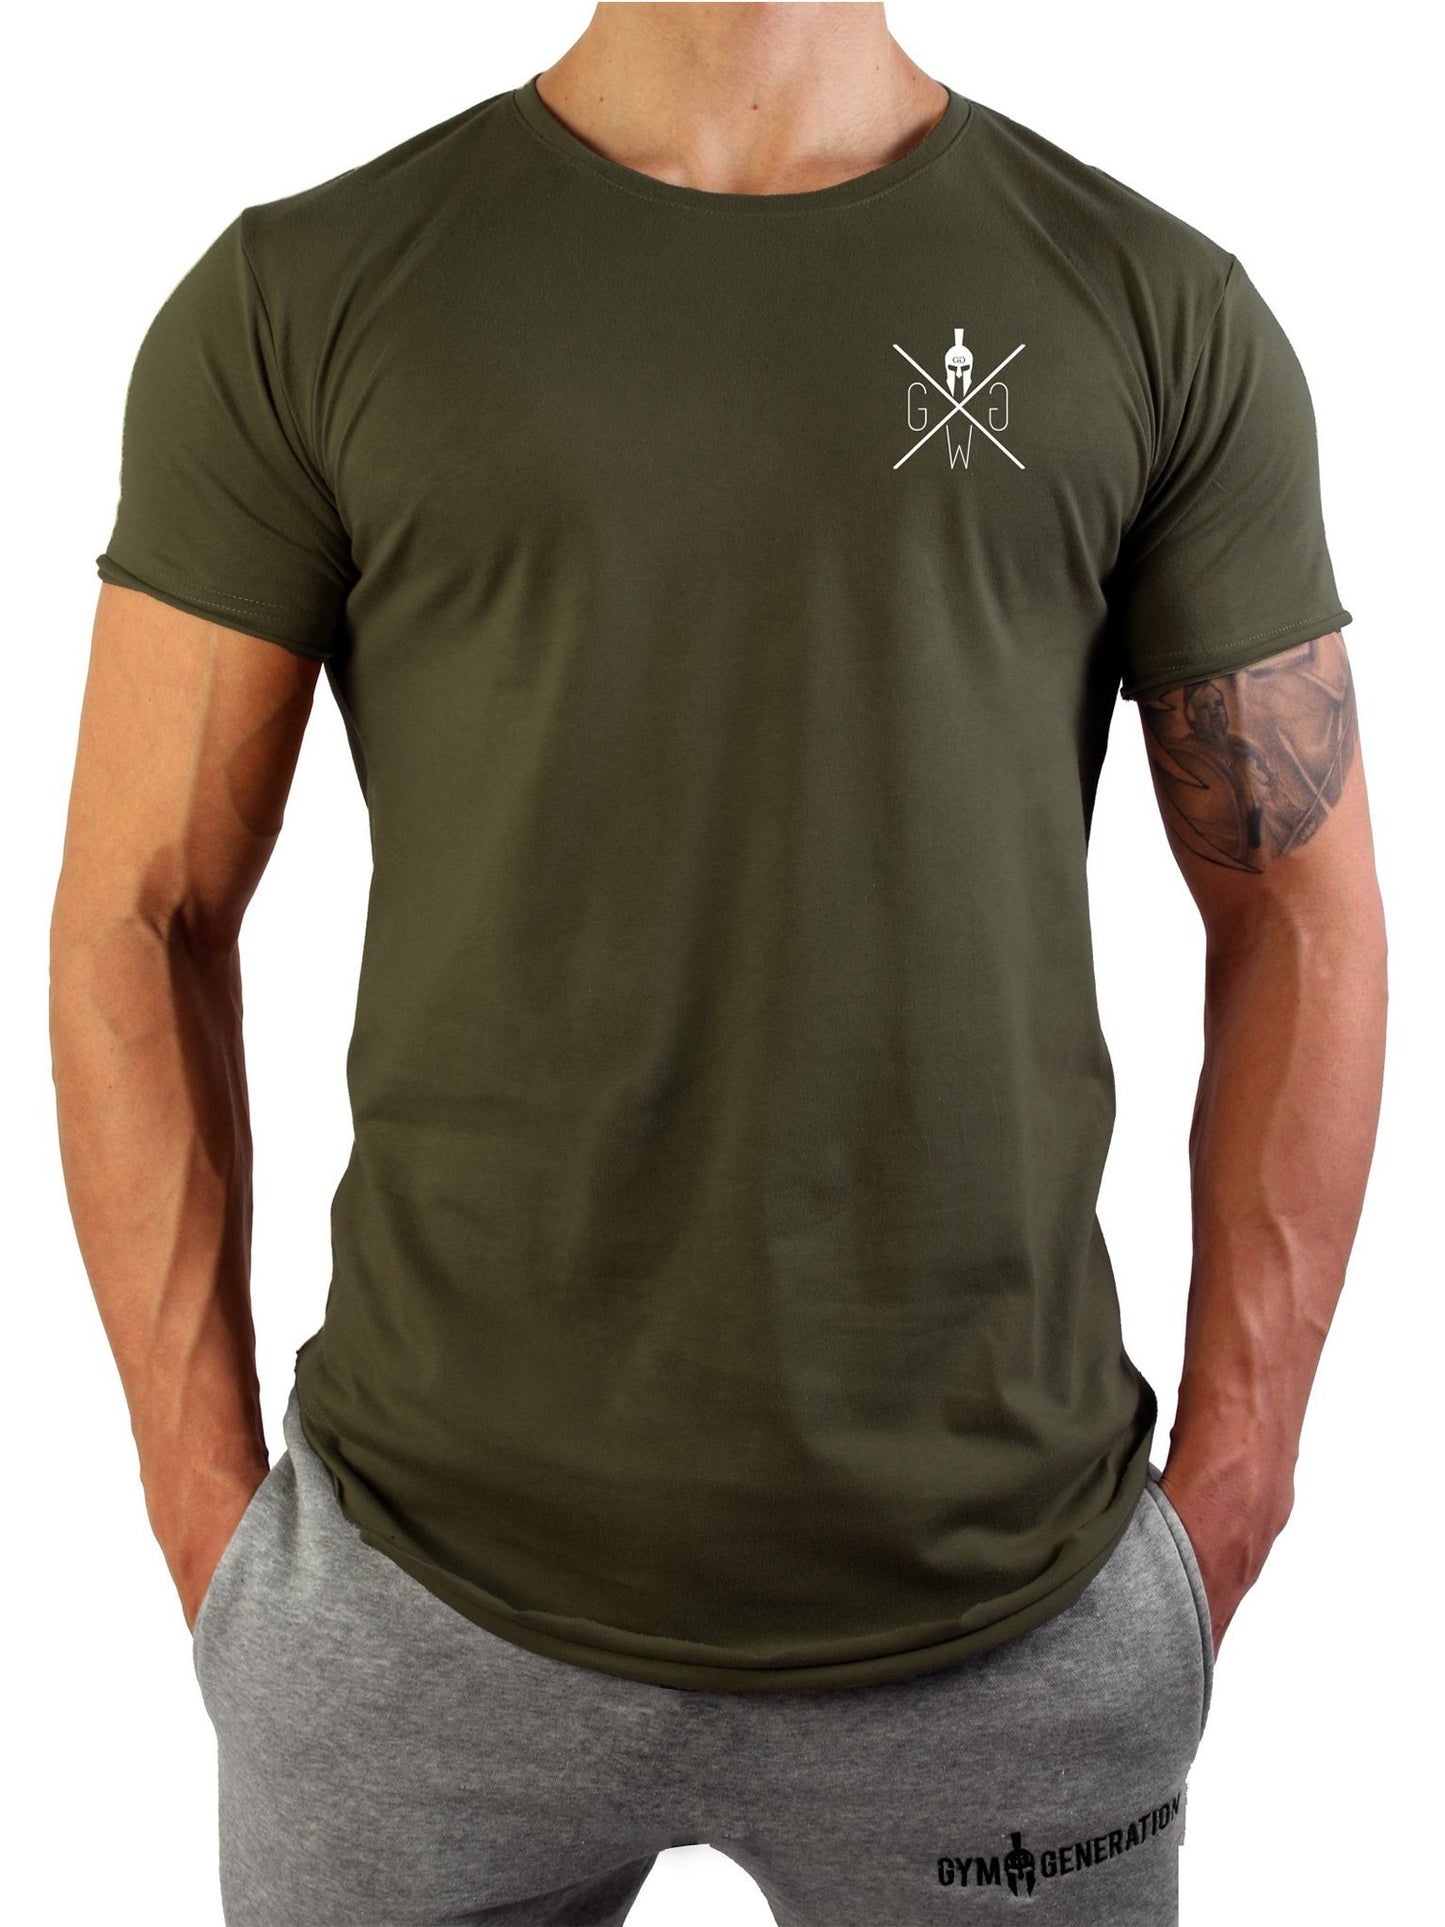 Bequemes und langlebiges Warrior T-Shirt, ein Must-Have für modebewusste Männer, ideal für jede Gelegenheit.